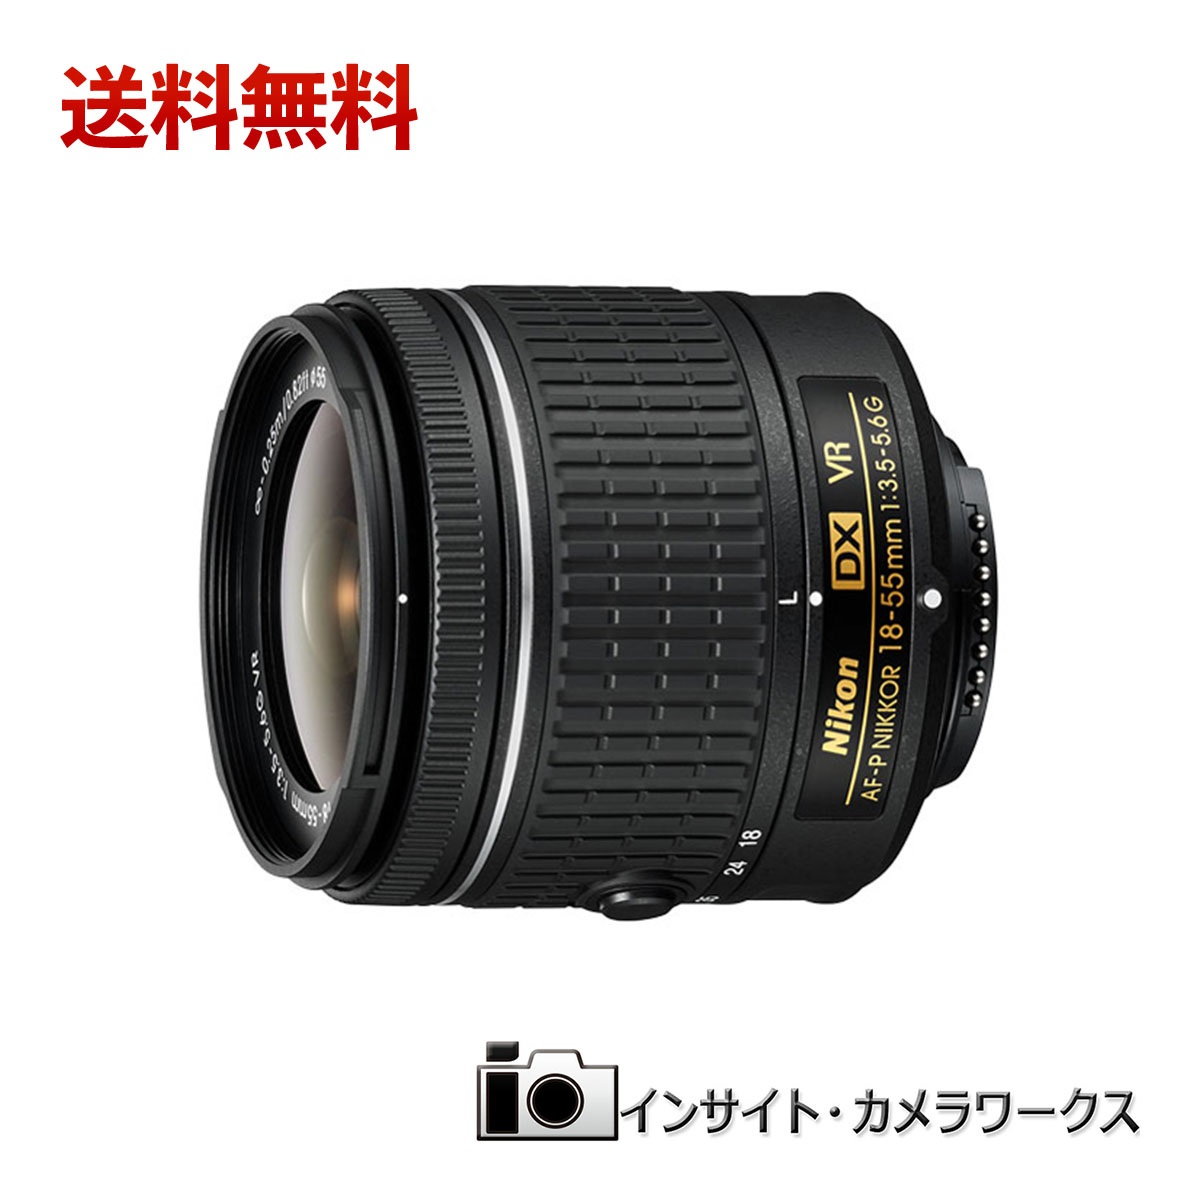 送料無料 特価 Nikon 標準ズームレンズ AF-P DX NIKKOR 18-55mm 10ヶ月保証 店舗仕様箱 VR ニコンDXフォーマット専用 3.5-5.6G 今だけ限定15%OFFクーポン発行中 高い素材 交換レンズ f